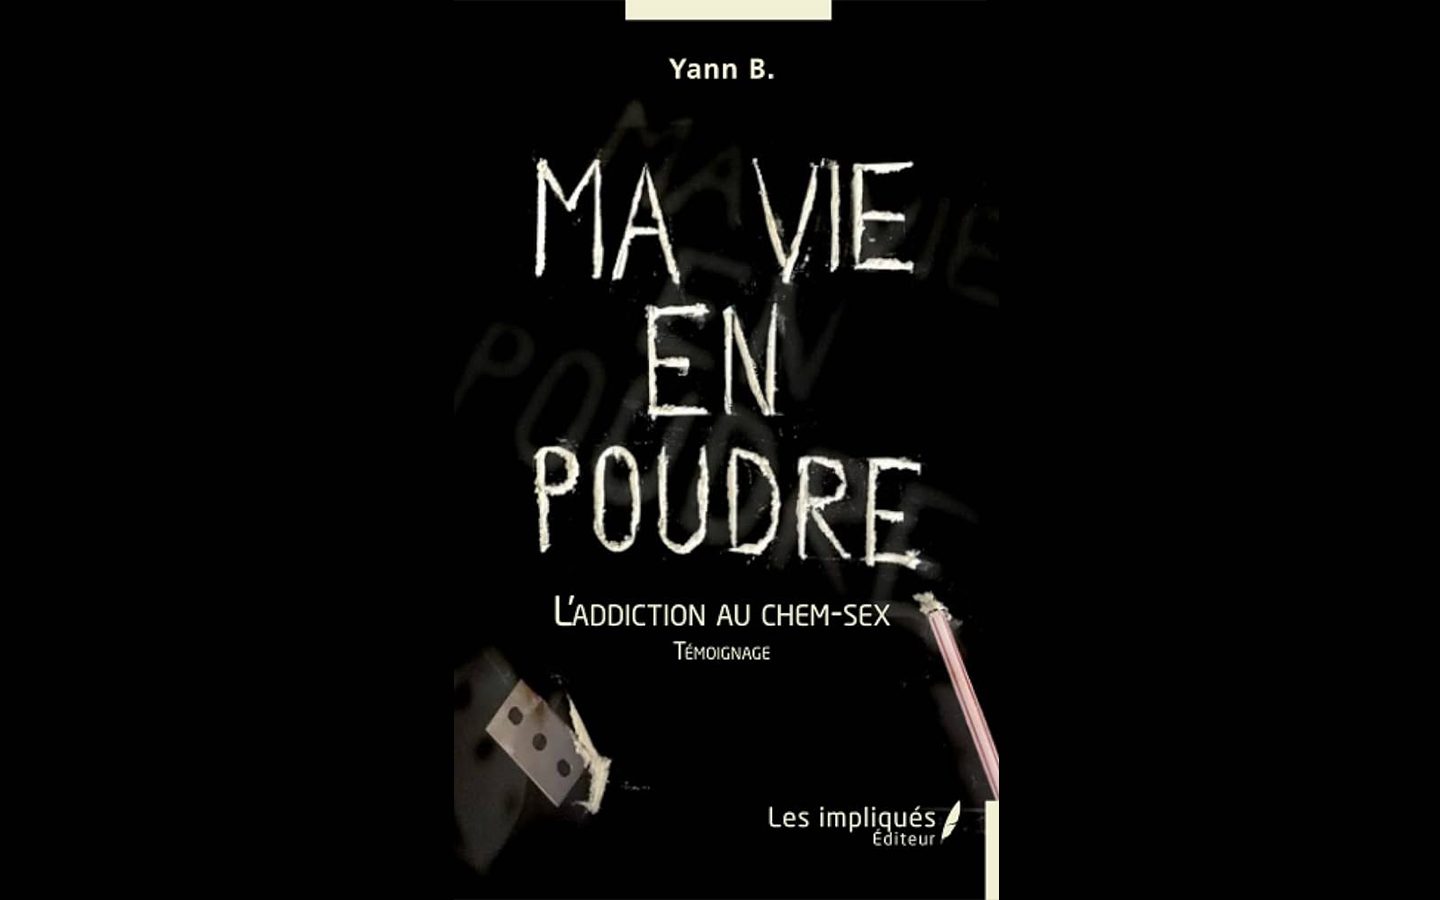 Couverture du livre "ma vie en poudre" écrit par Yann B aux éditions Les Impliqués